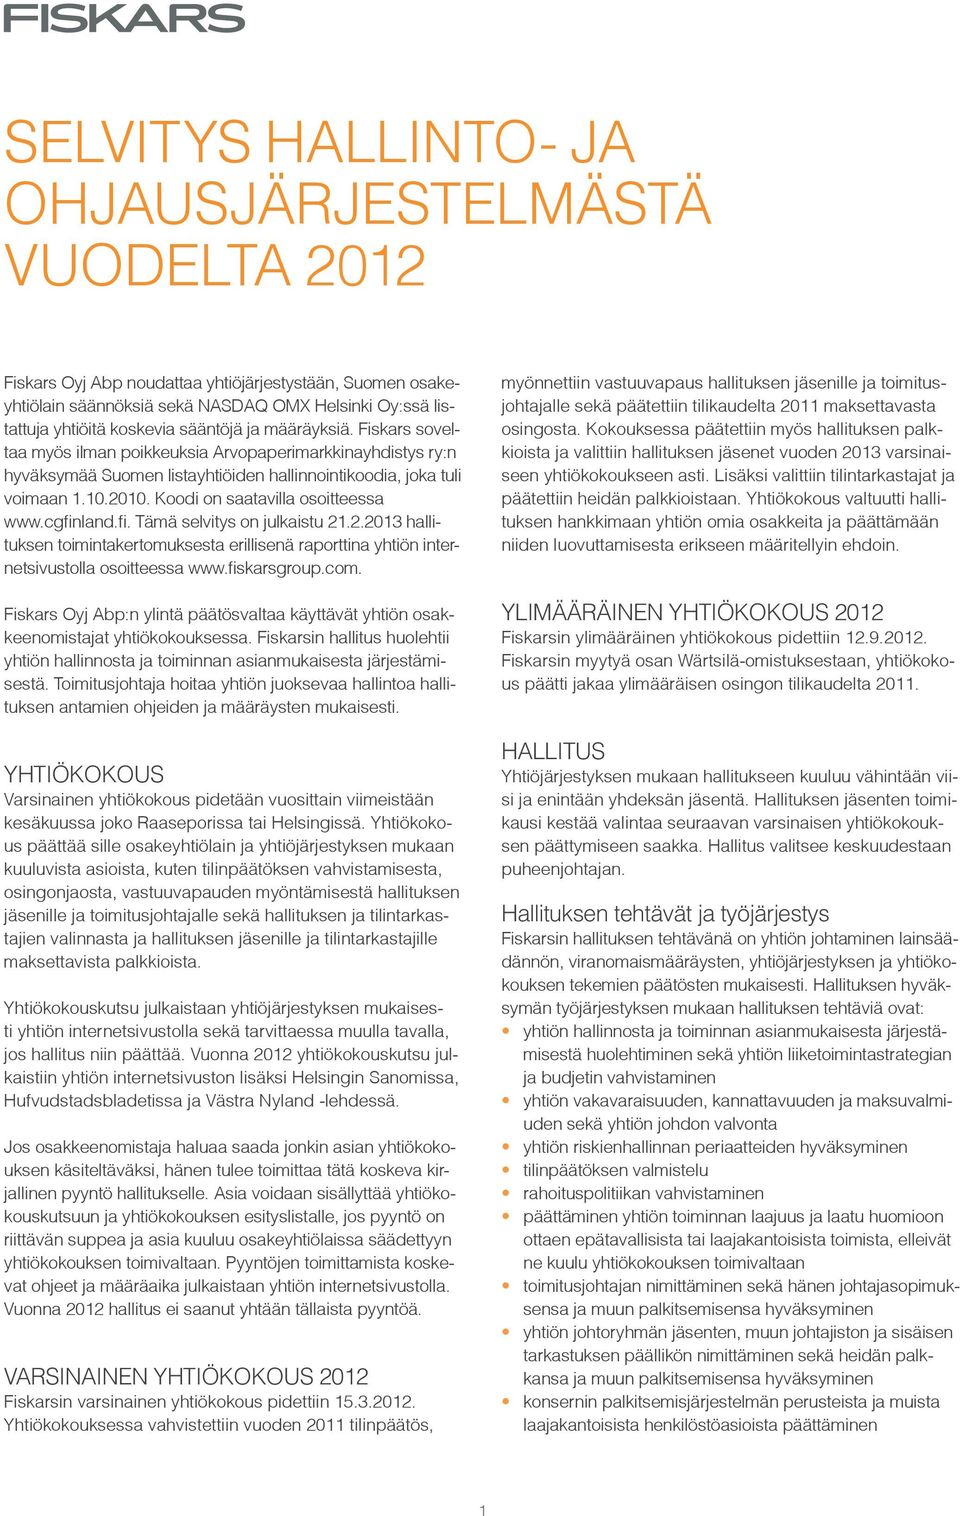 Koodi on saatavilla osoitteessa www.cgfinland.fi. Tämä selvitys on julkaistu 21.2.2013 hallituksen toimintakertomuksesta erillisenä raporttina yhtiön internetsivustolla osoitteessa www.fiskarsgroup.